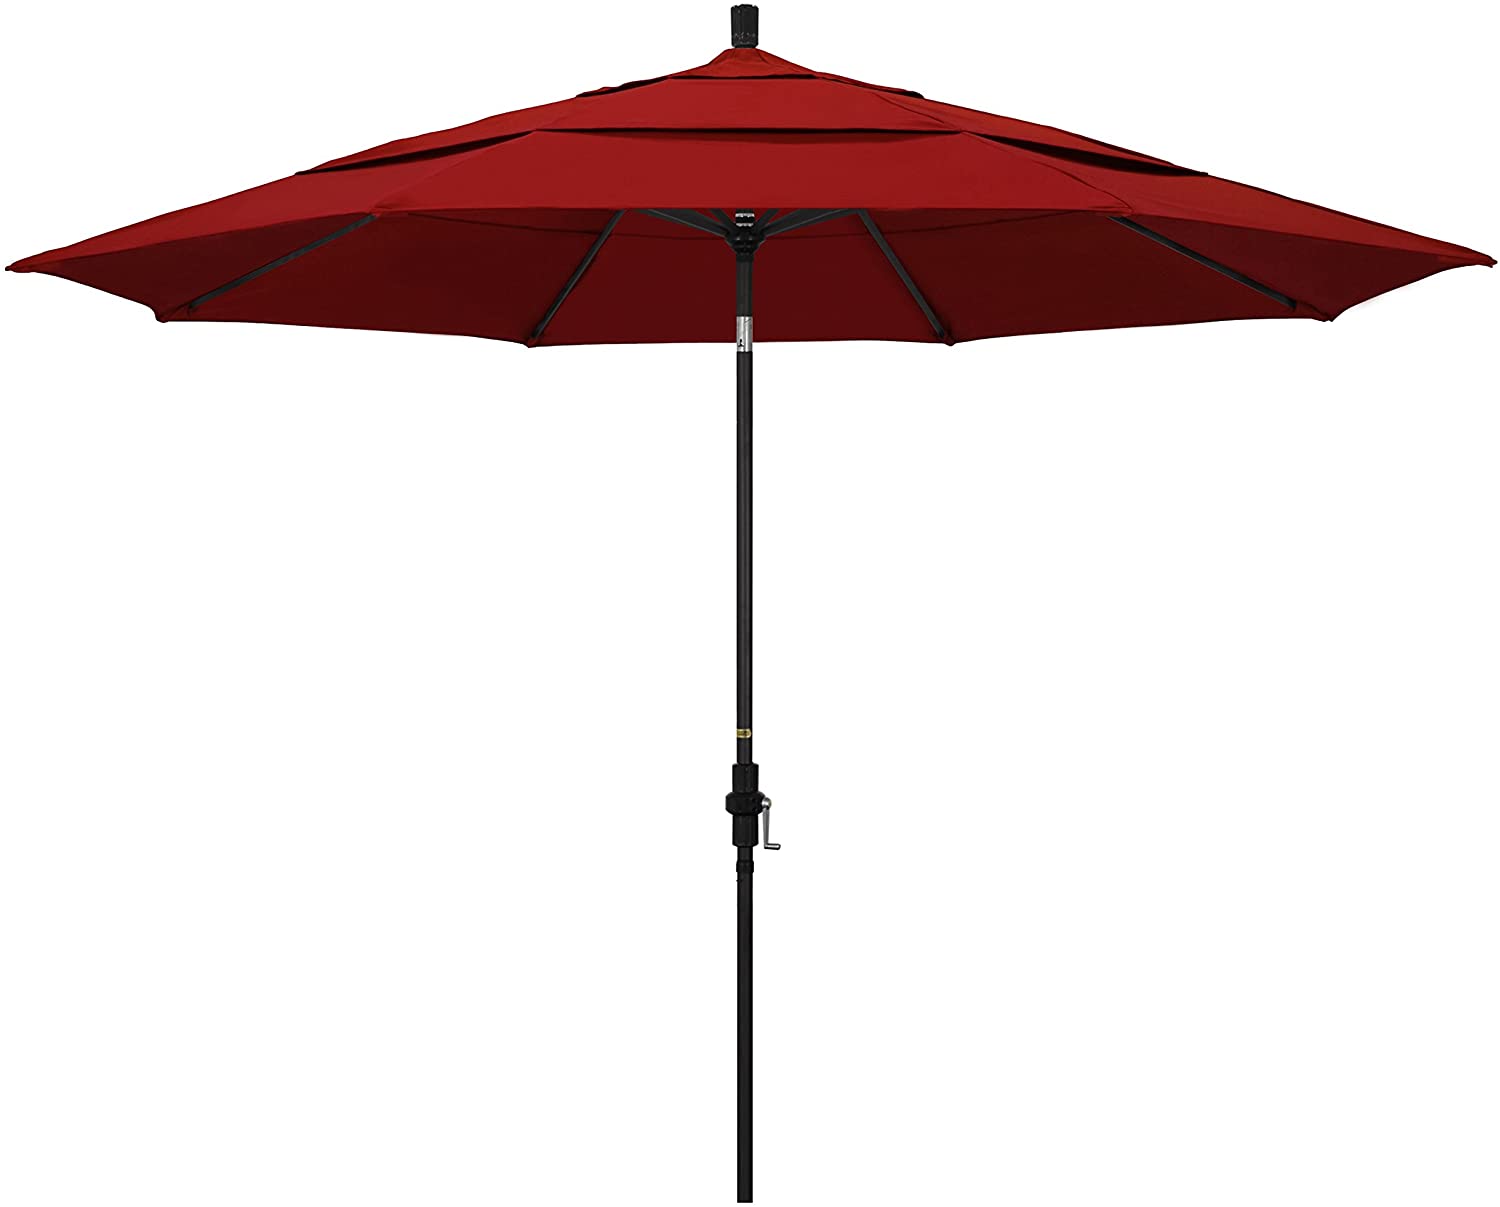 California Umbrella GSCU118302-5403-DWV 11' Round Aluminum Market, Crank Lift, Collar Tilt, Black Pole, Sunbrella Jockey Red Patio Umbrella, 11-Foot KB2449-A2-B3-P2